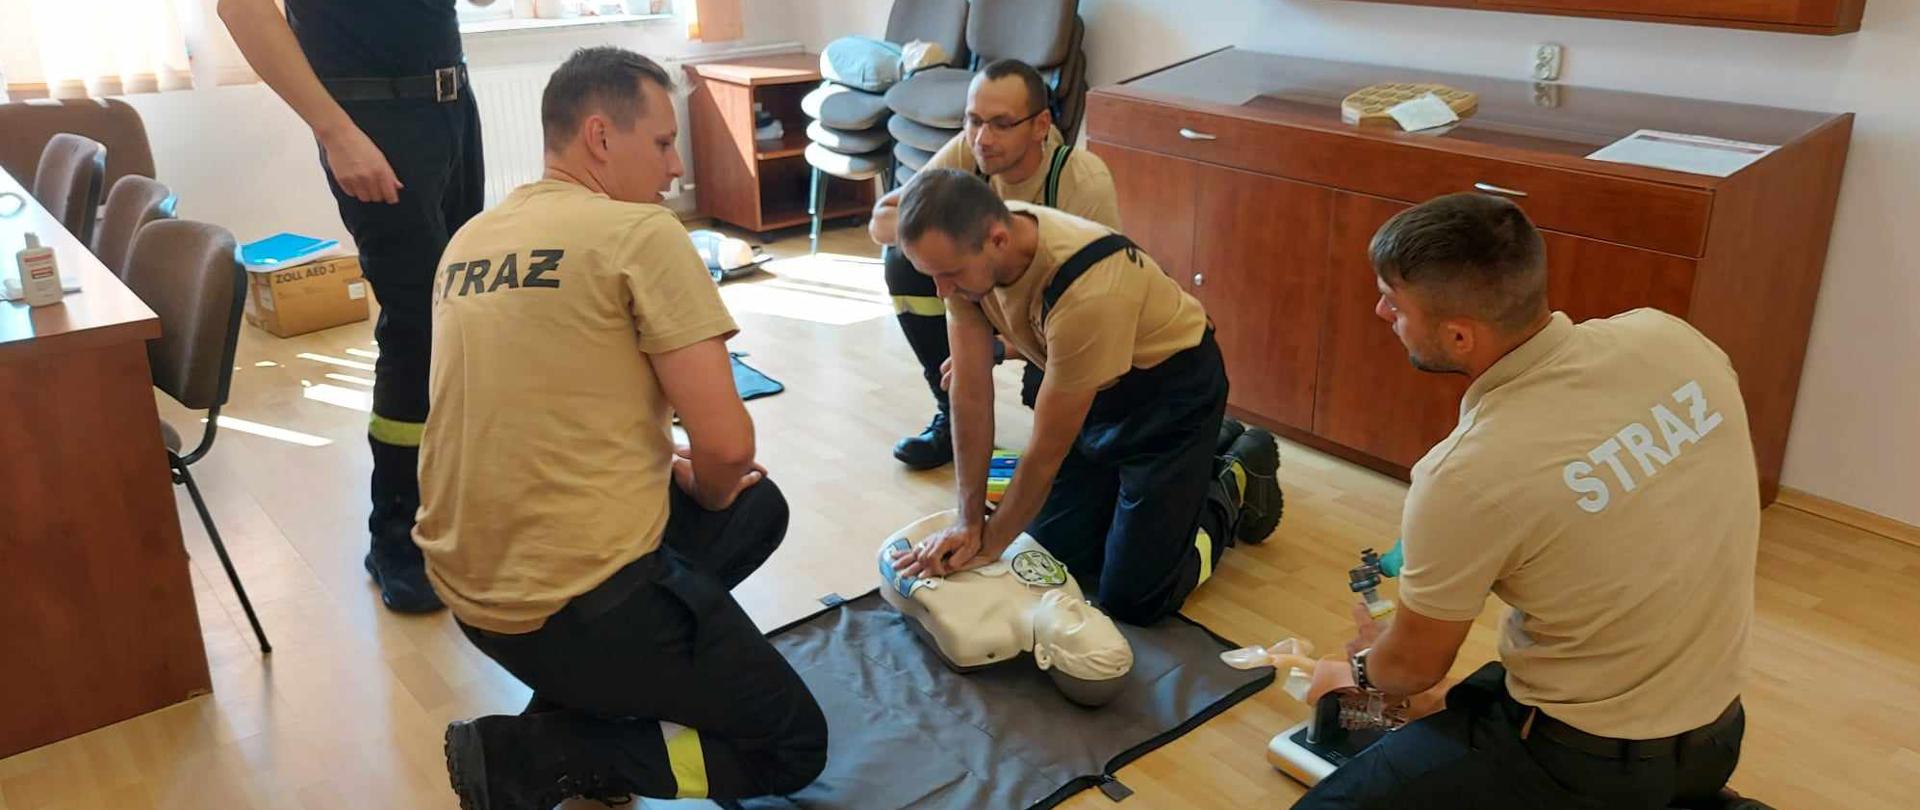 Strażacy druhowie podczas części praktycznej egzaminu z kwalifikowanej pierwszej pomocy. Jeden ze strażaków wykonuje masaż serca na fantomie.